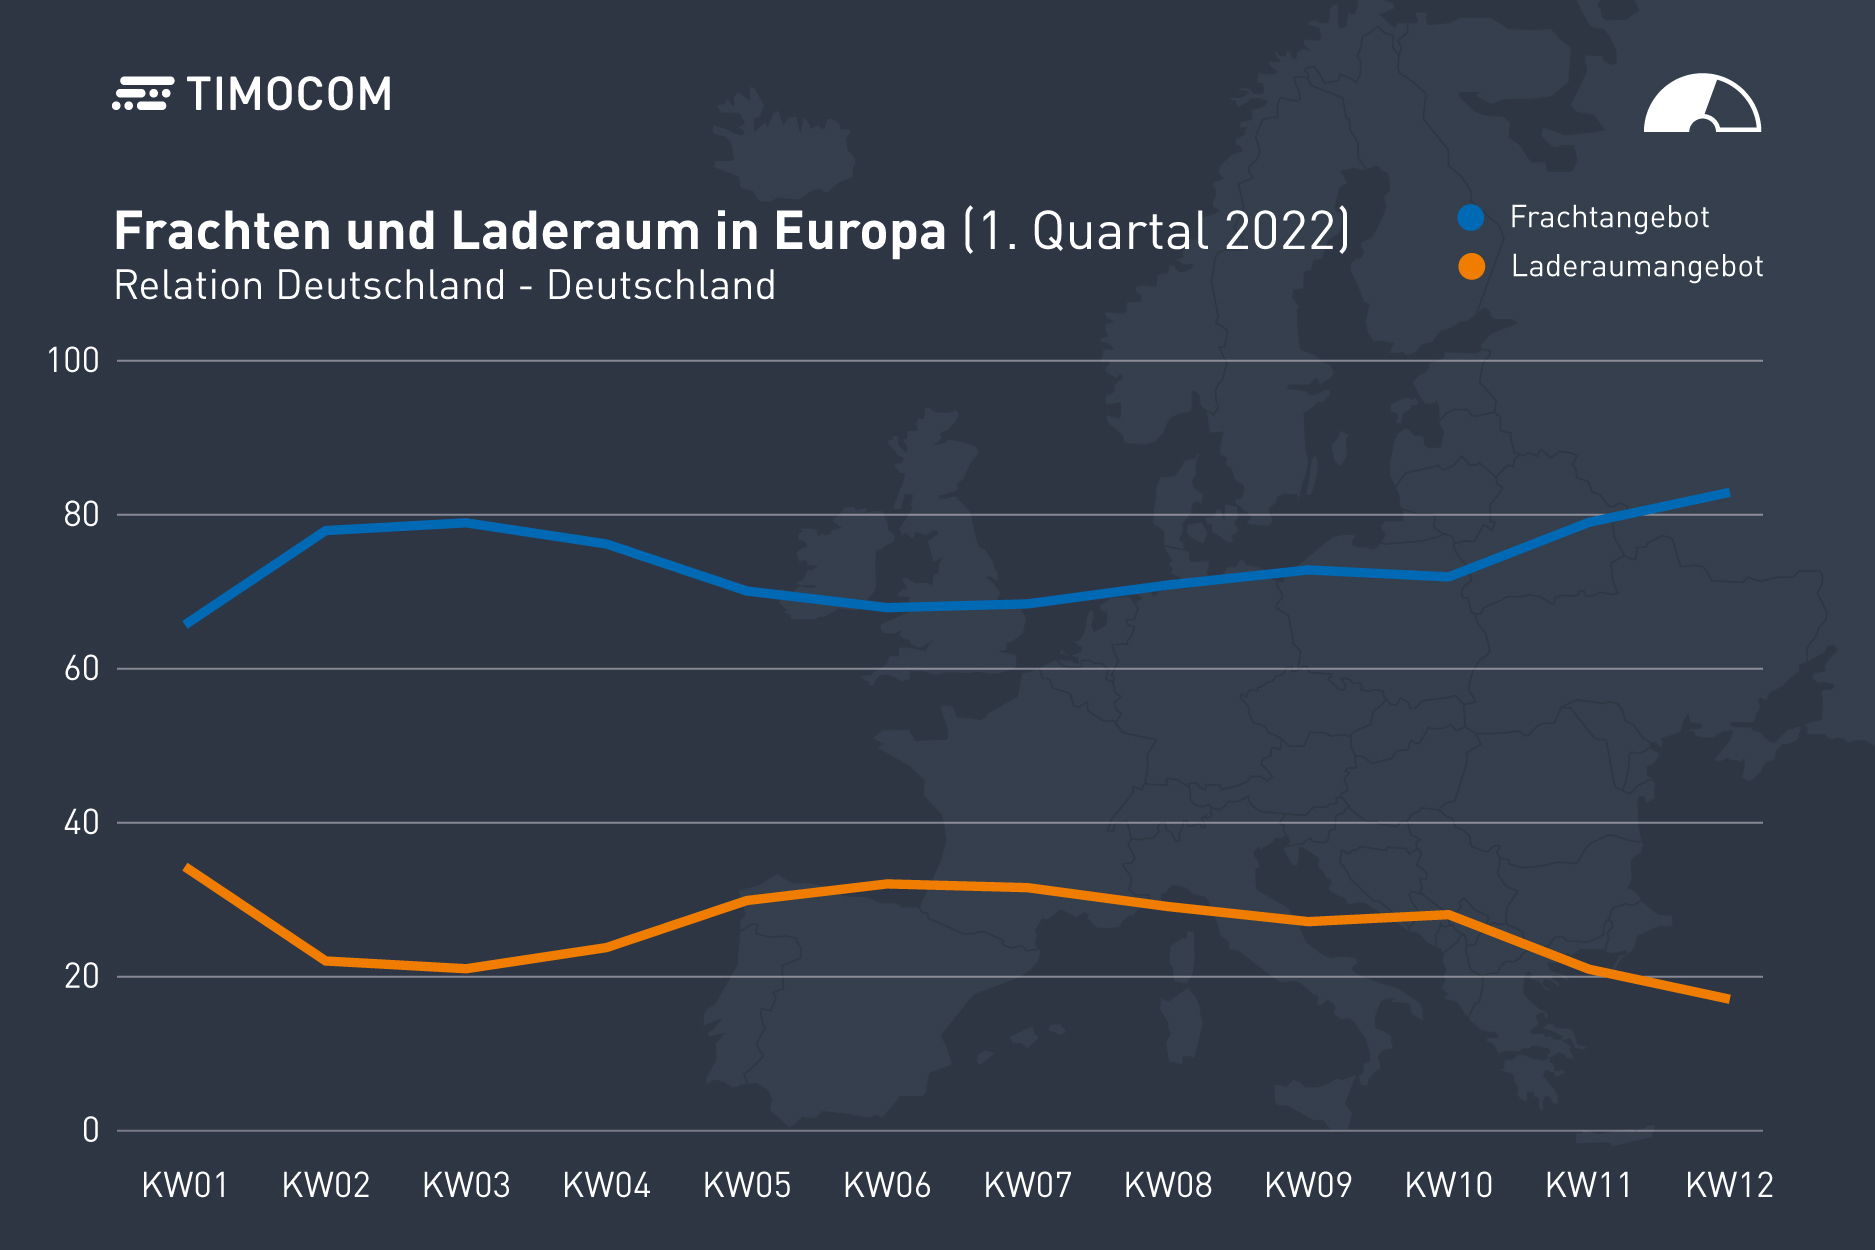 Frachten und Laderaum Deutschland im 1. Quartal 2022